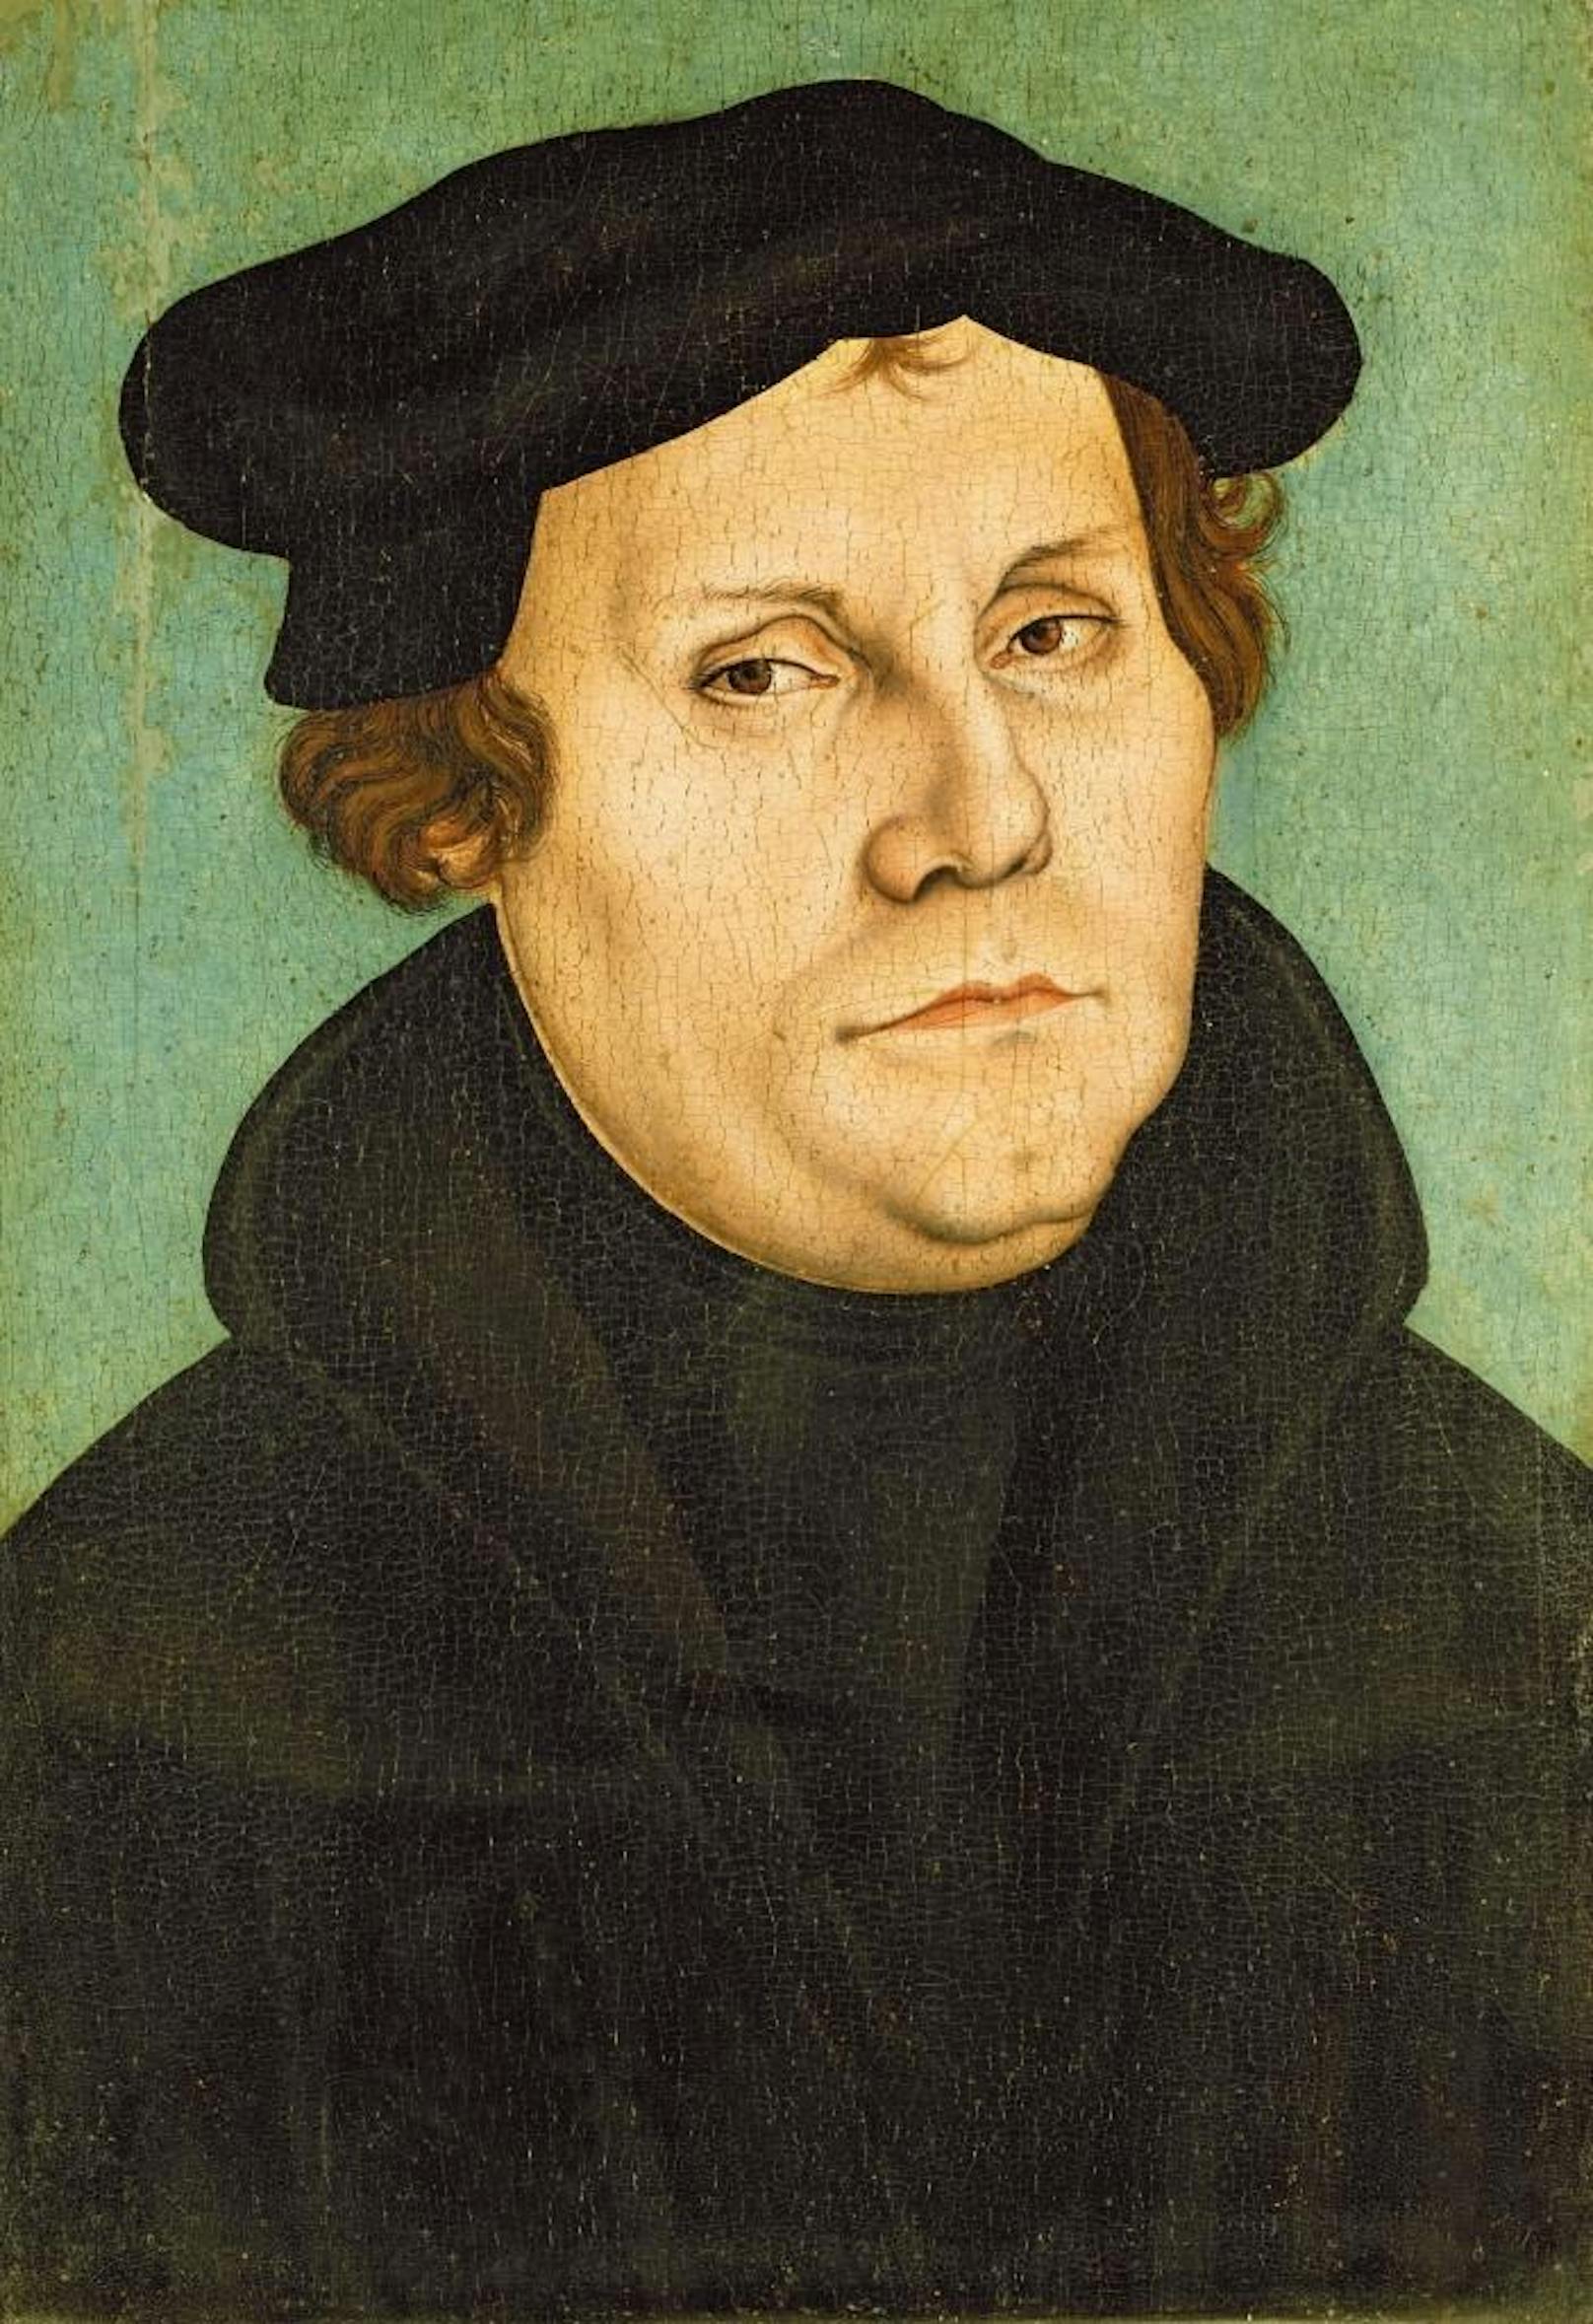 <b>Martin Luther,1483-1546 (Gemälde von Lucas Cranach dem Älteren)</b>

Eines der berühmtesten, wahrscheinlich weil lustigsten Zitate, die dem Kirchenvater der Evangelischen Kirche, nachgesagt wird ist: "Warum rülpset und furzet ihr nicht, hat es euch nicht geschmacket?"